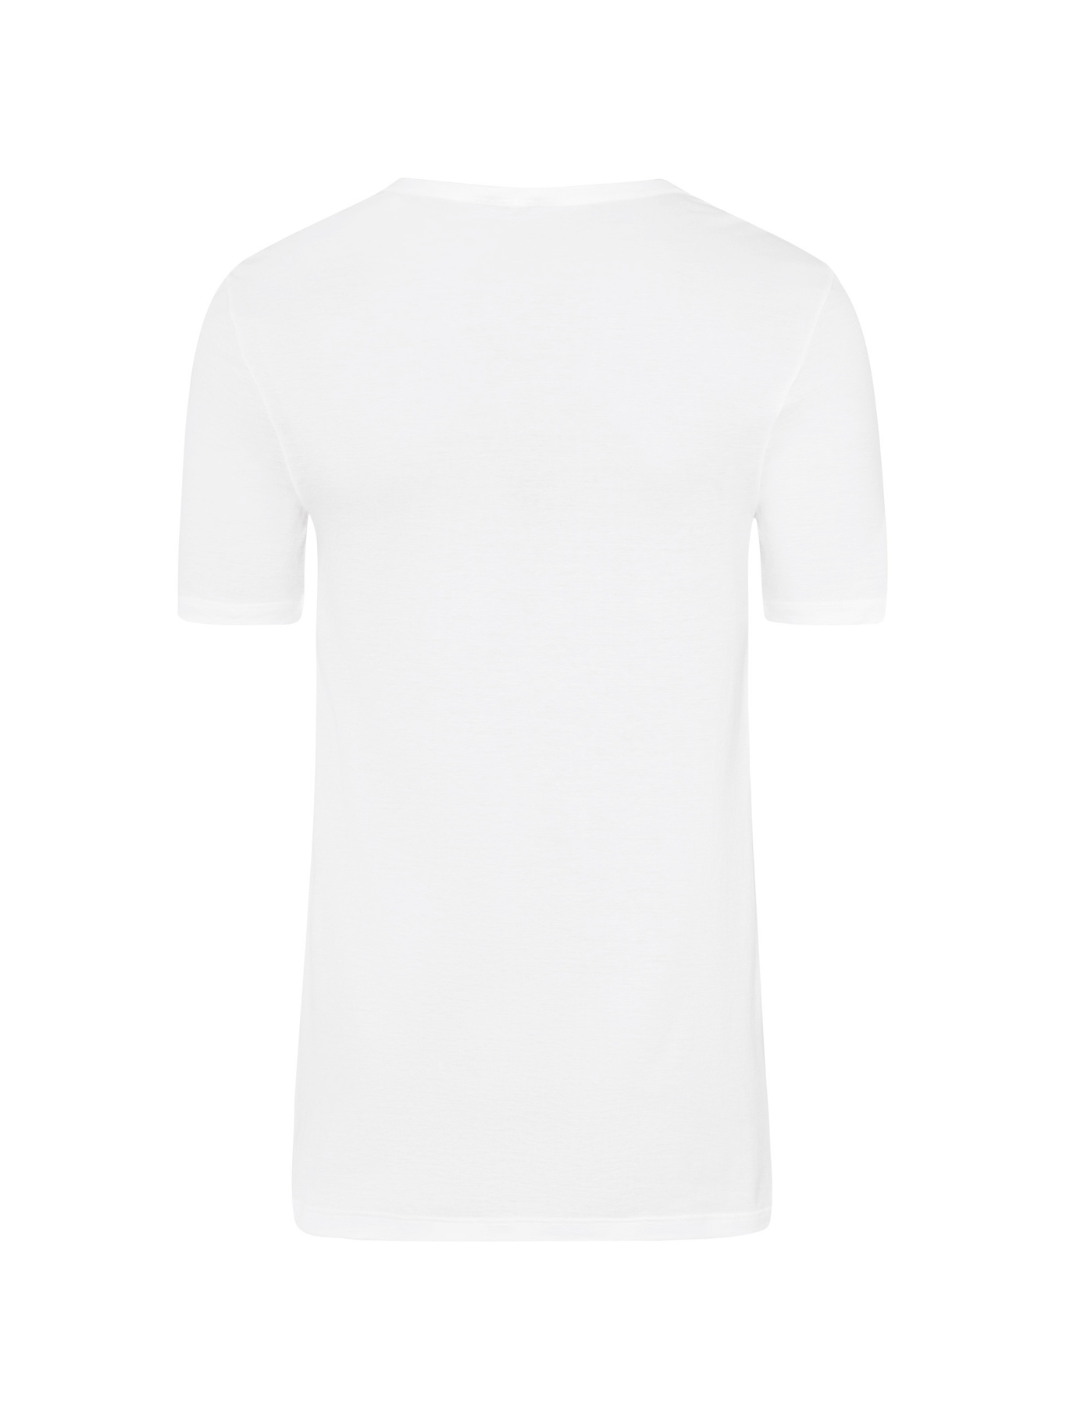 Ultralight V-Shirt Kurzarm - Weiß